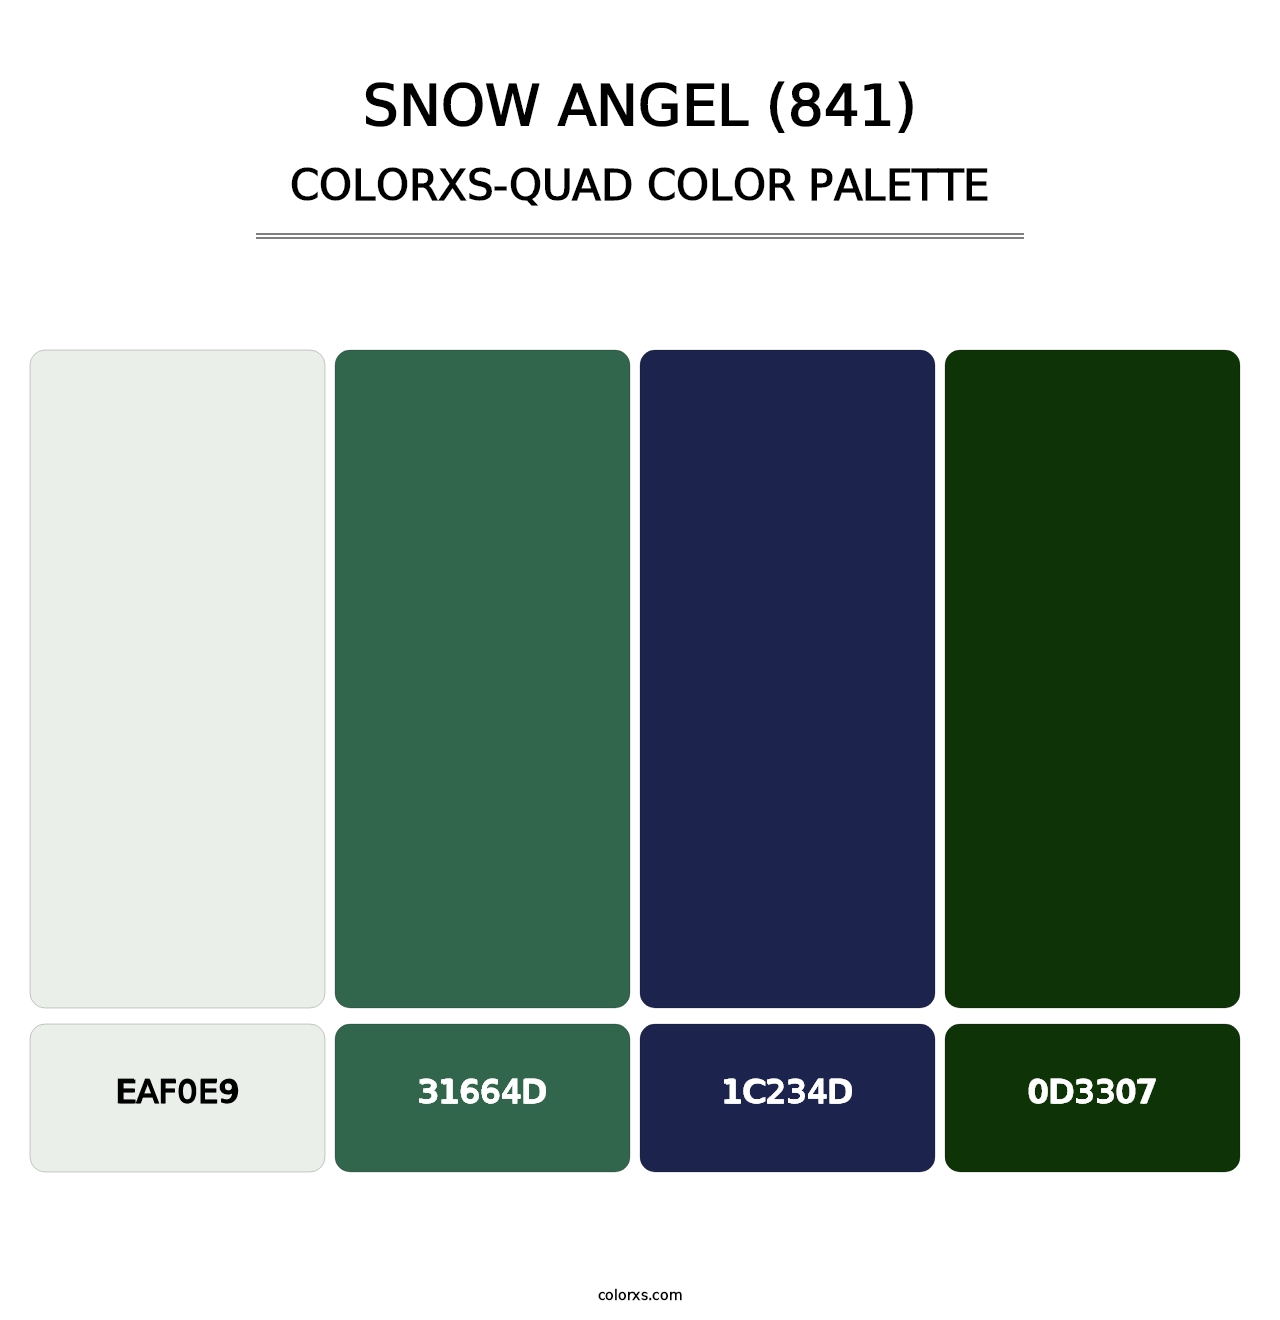 Snow Angel (841) - Colorxs Quad Palette